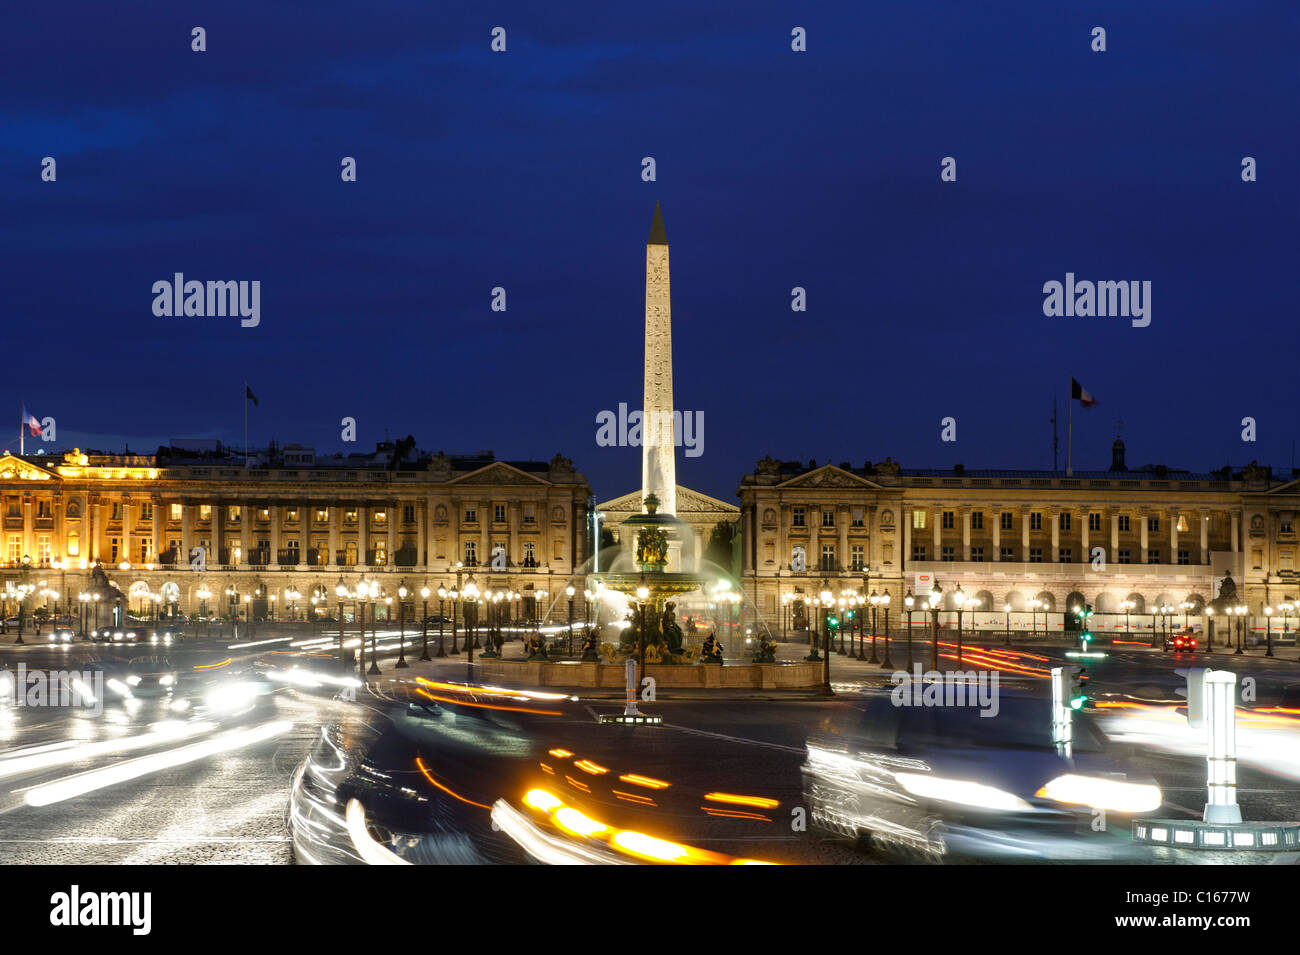 Stadtverkehr und Obelisken an der Place De La Concorde, Galerie Nationale du Jeu de Paume, Musee de l ' Orangerie, Paris, Frankreich Stockfoto